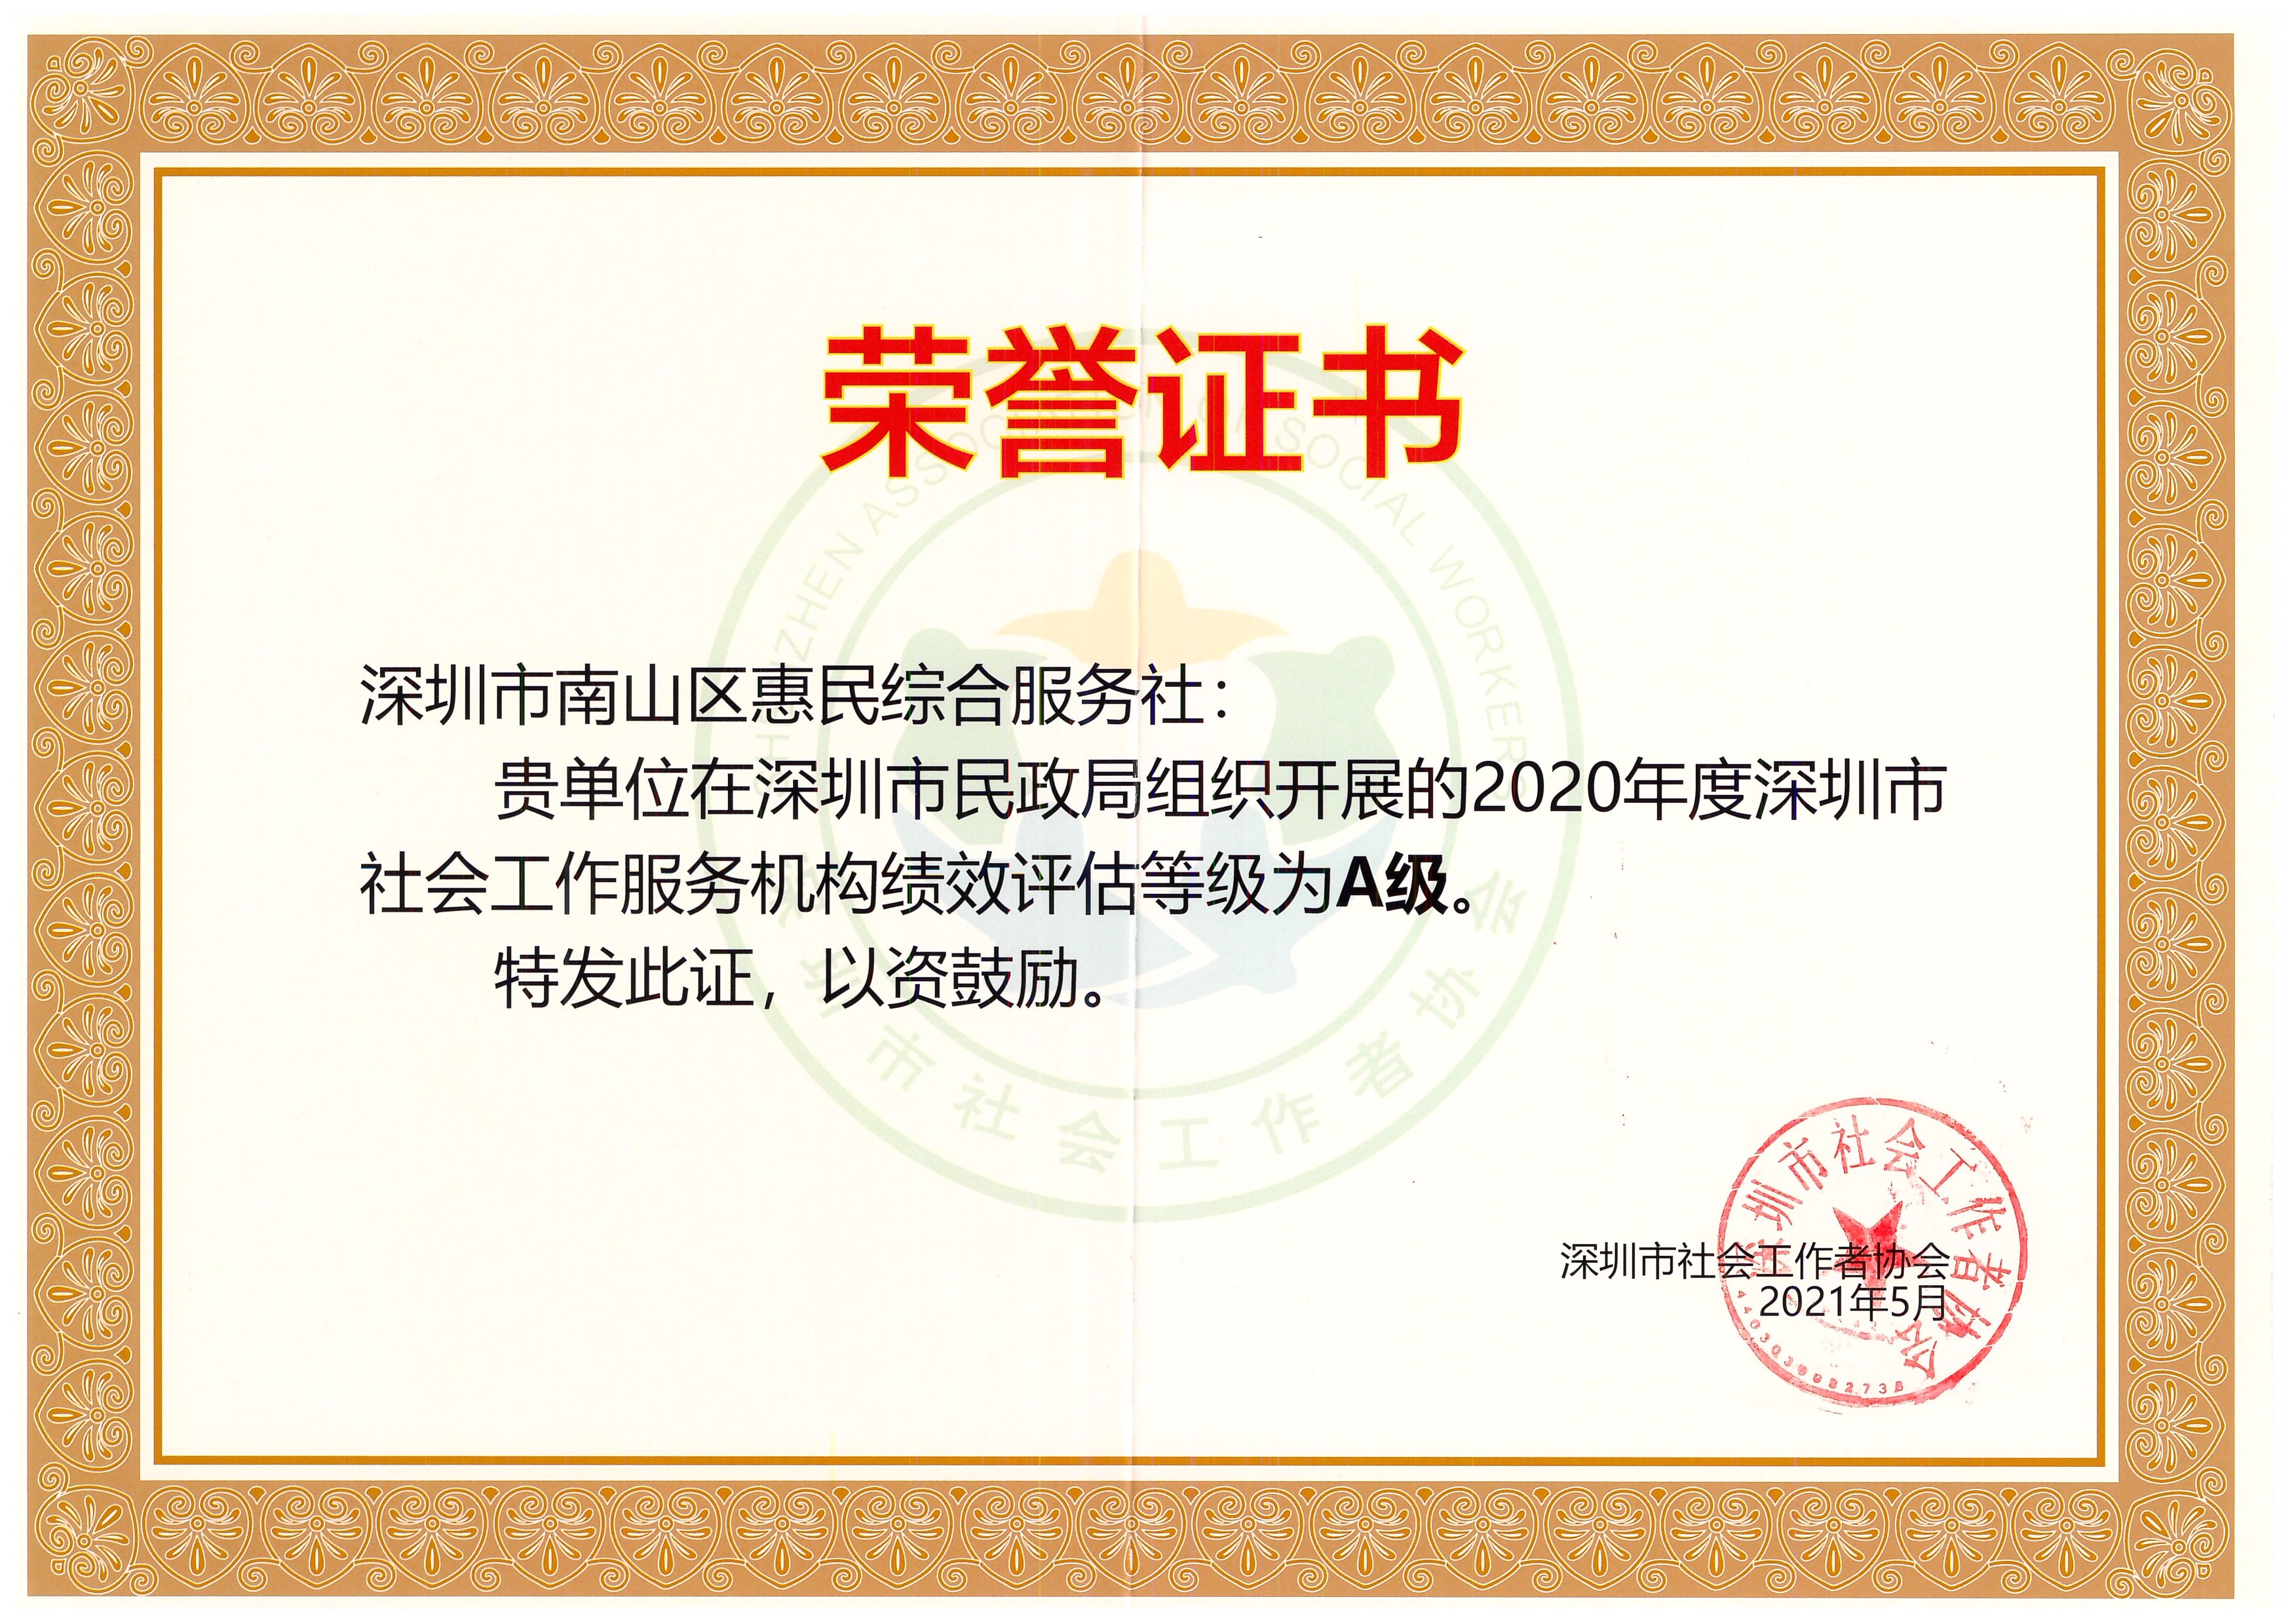 2020年度深圳市社会工作服务机构绩效评估A级